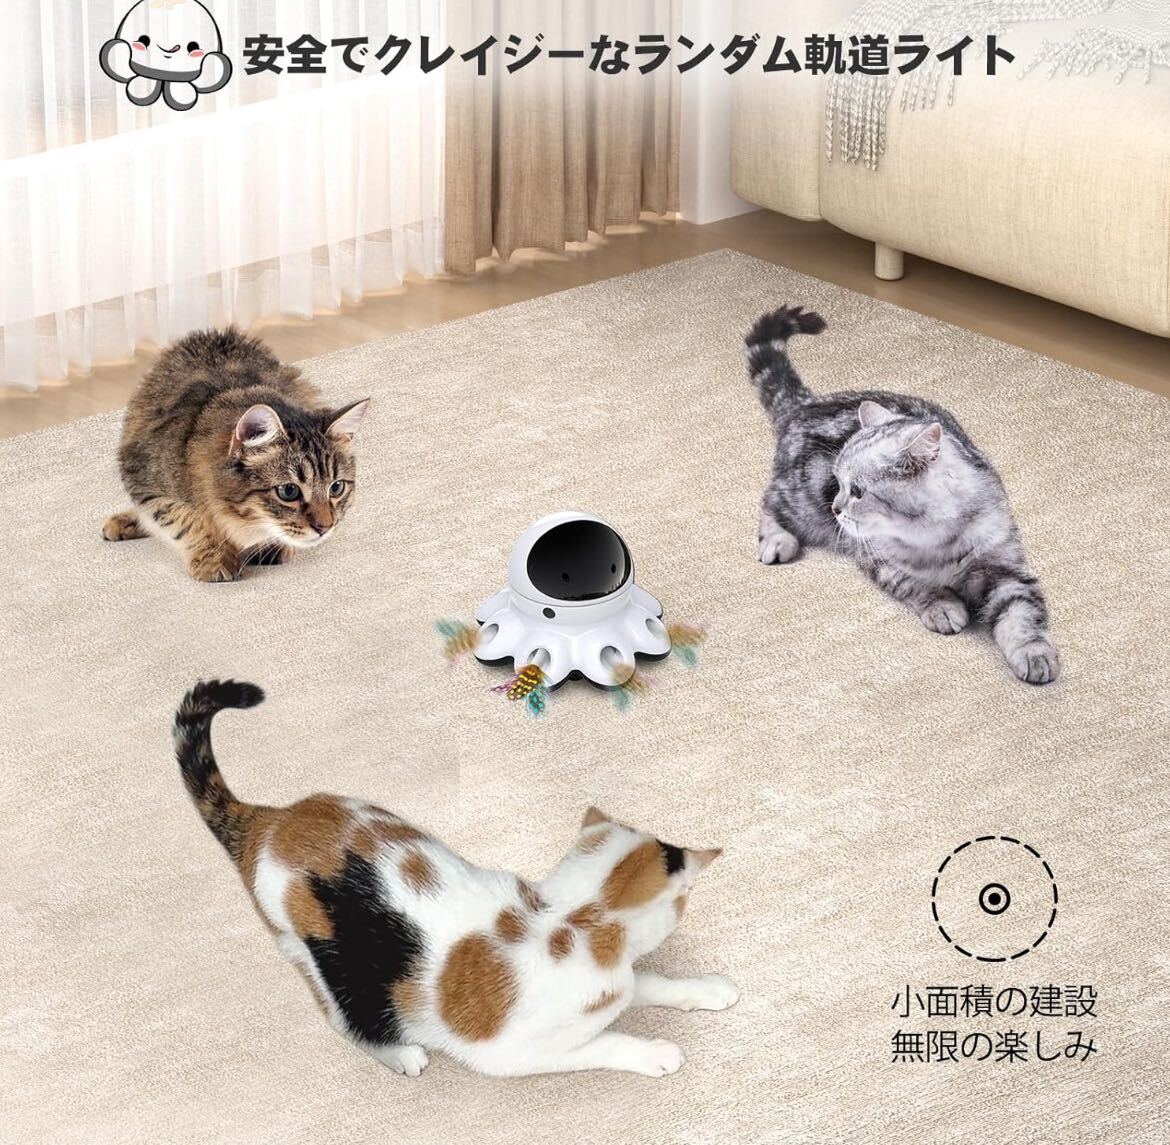 猫おもちゃ 電動 ORSDA 2-in-1一体式 自動回転 ペット玩具 、8つの穴はもぐらの動く羽を、愛猫のおもちゃモグラ叩き 全猫種に適応